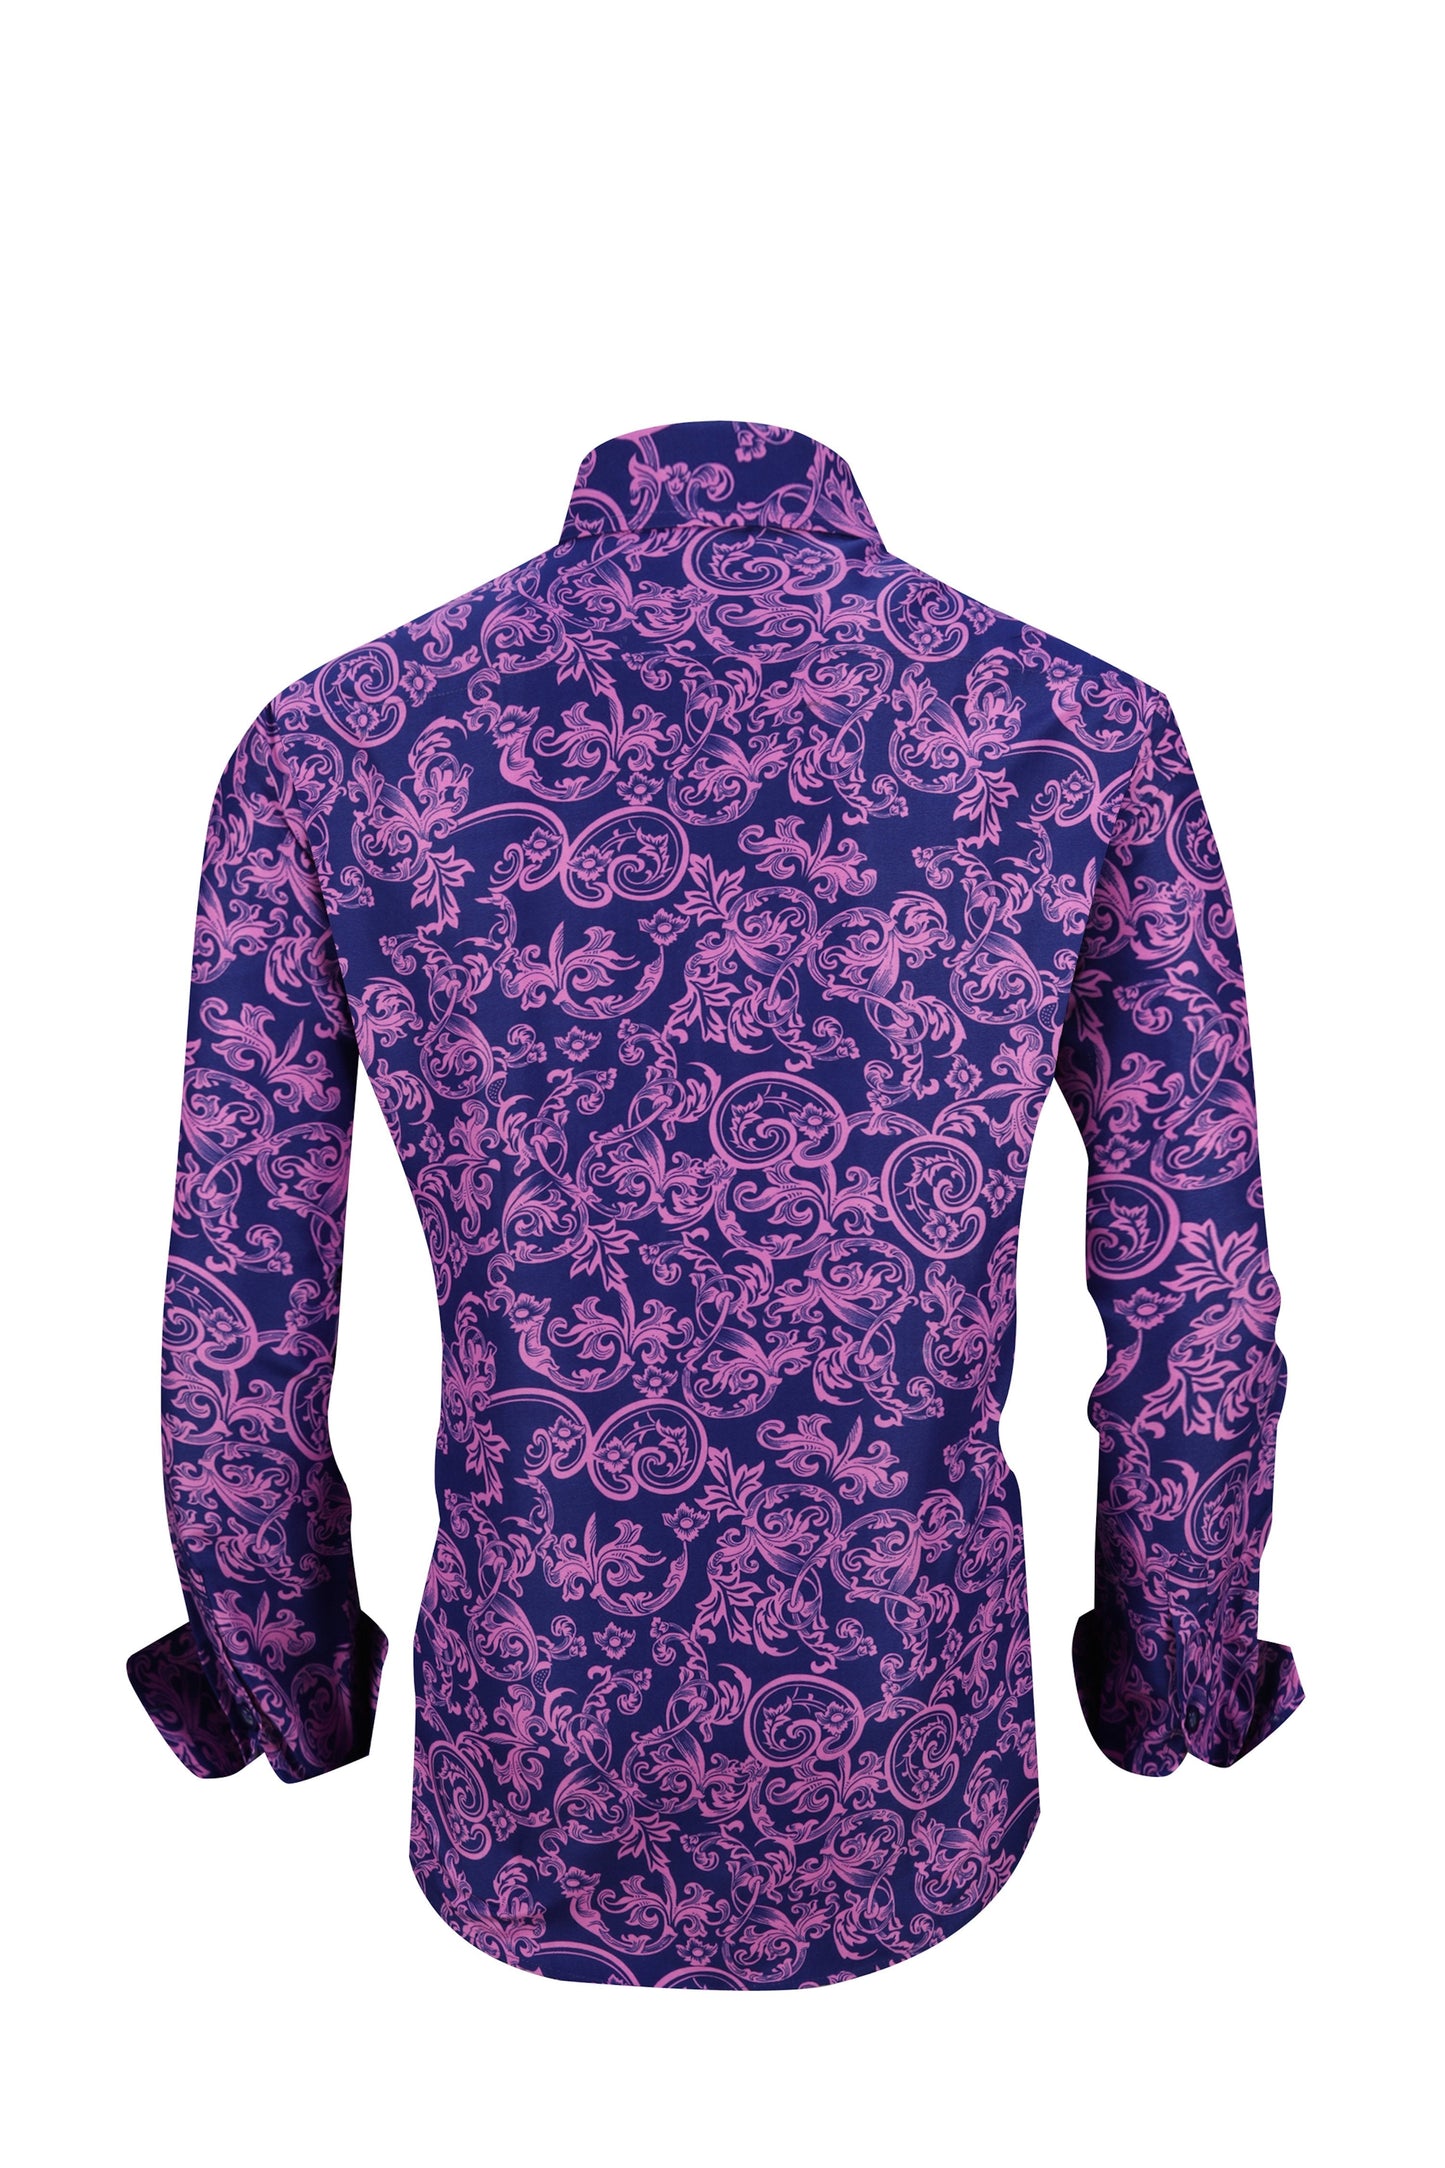 Men PREMIERE Long Sleeve Button Up Dress Shirt Purple Paisley